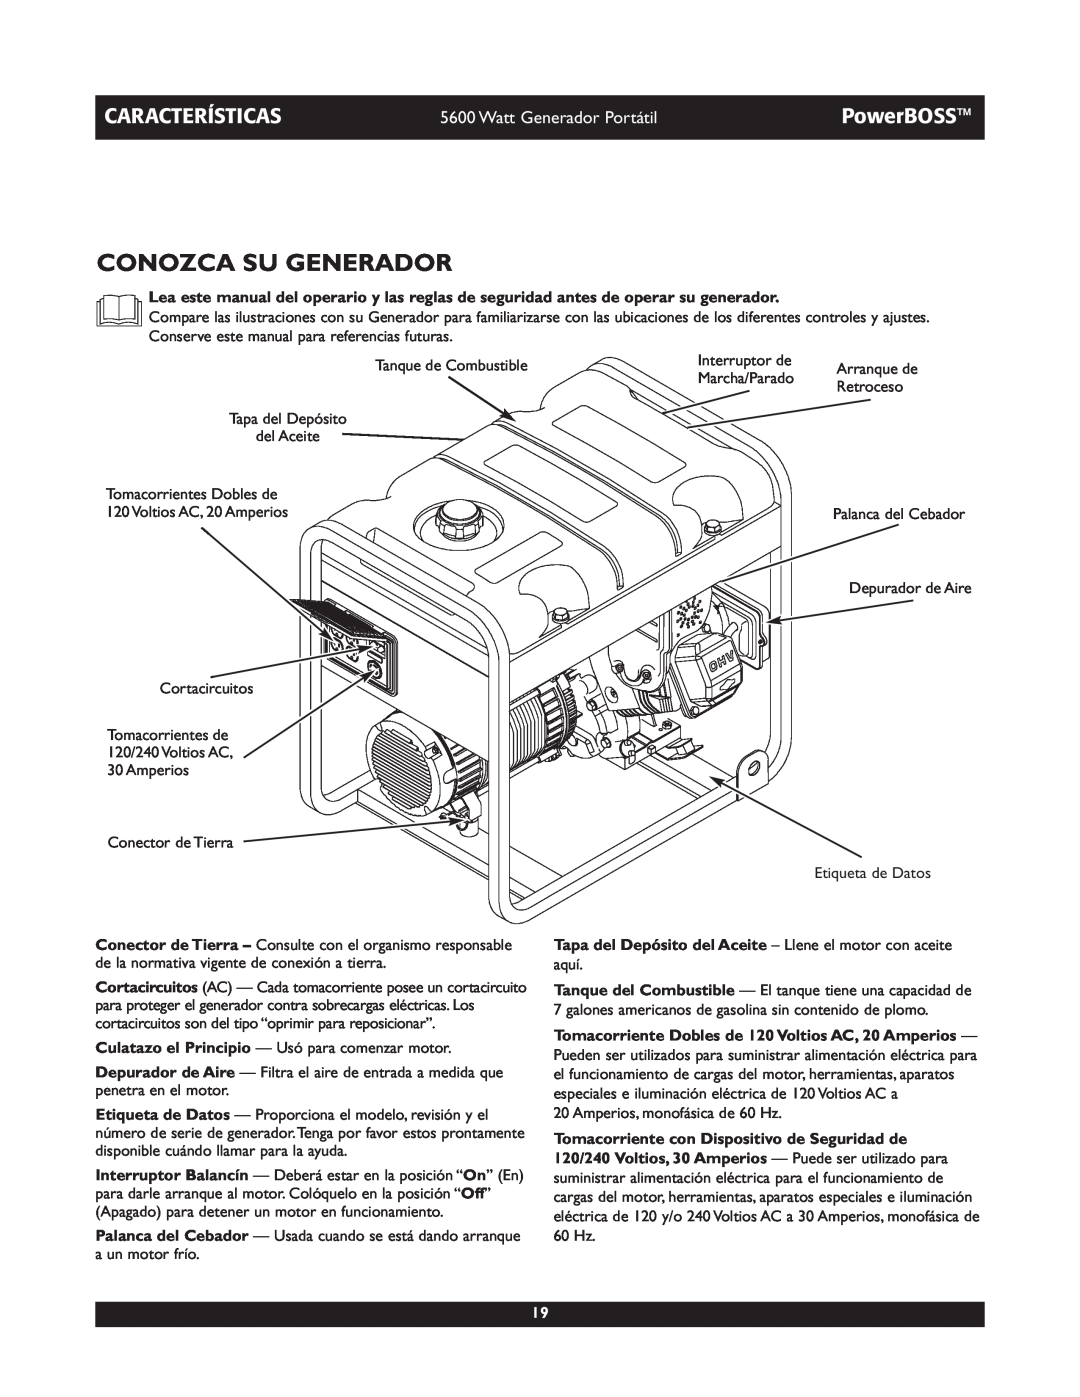 Briggs & Stratton 30230 manual Conozca Su Generador, Características, PowerBOSS, Watt Generador Portátil 